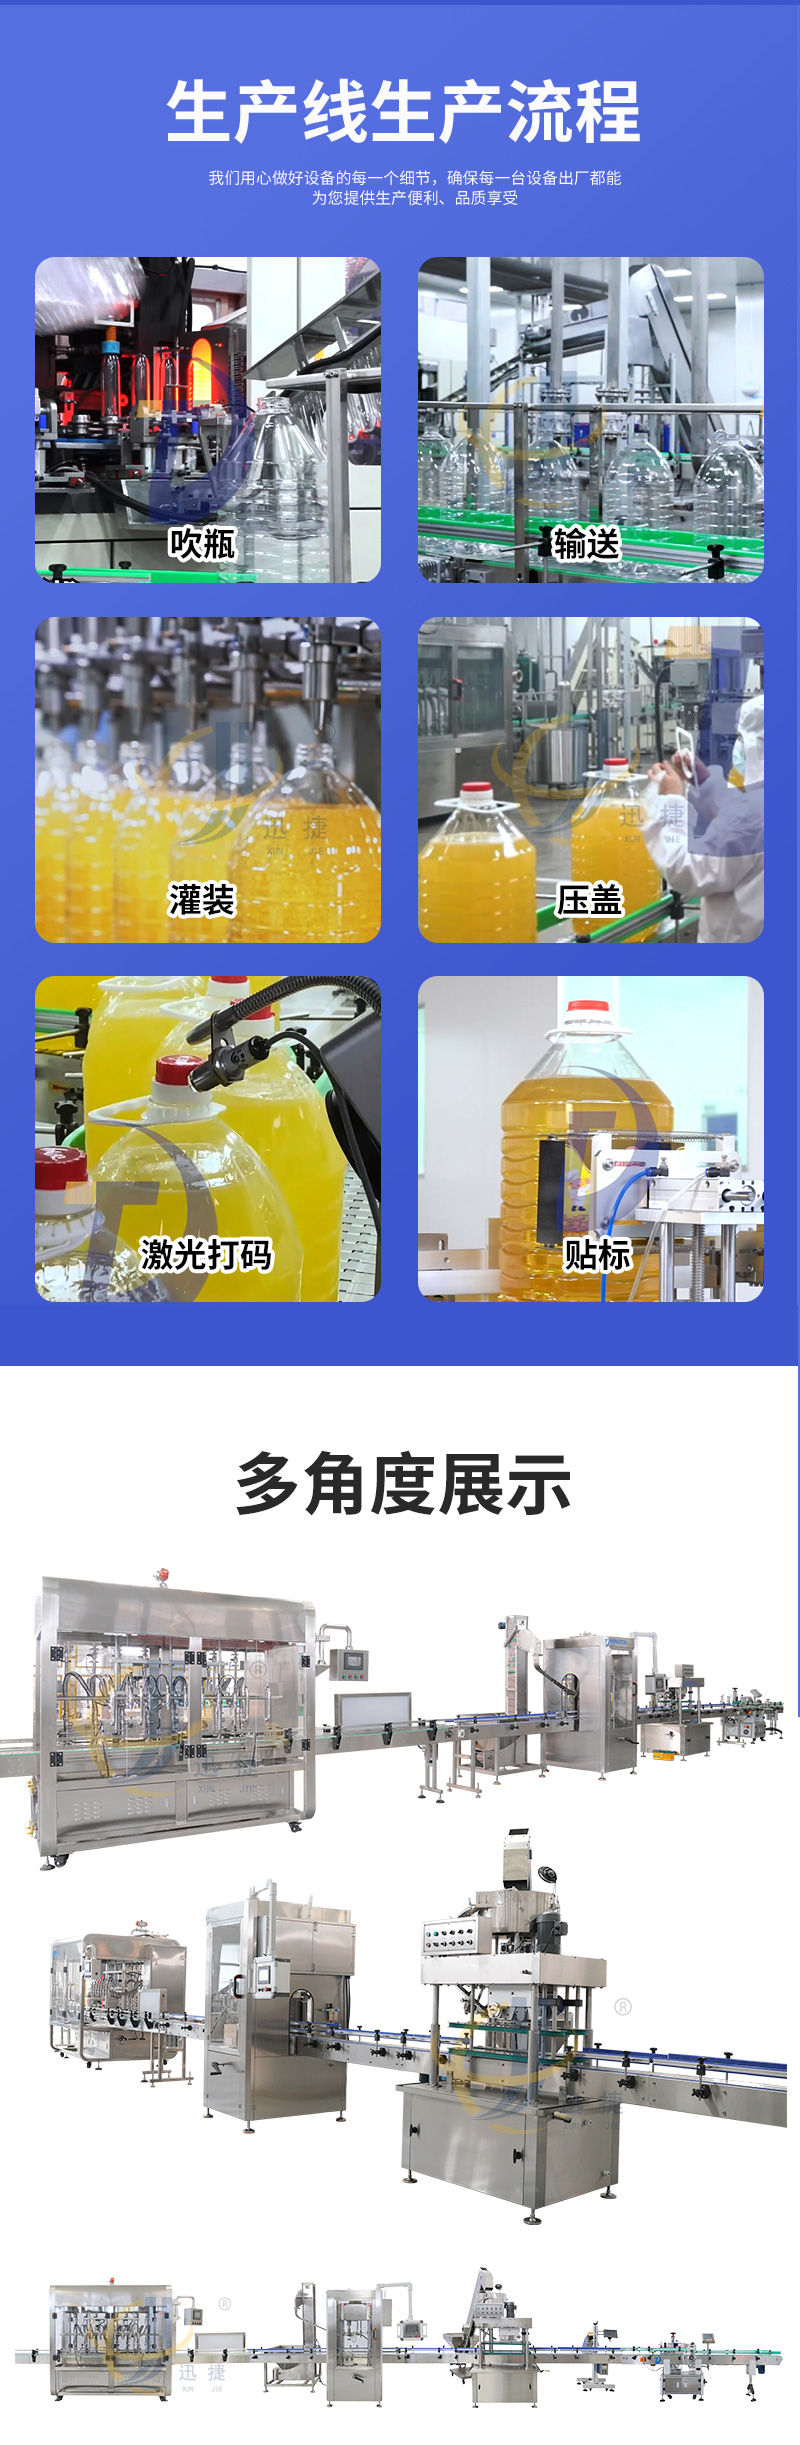 5食用油灌装生产线详情页爱游戏全站app下载
_05.jpg